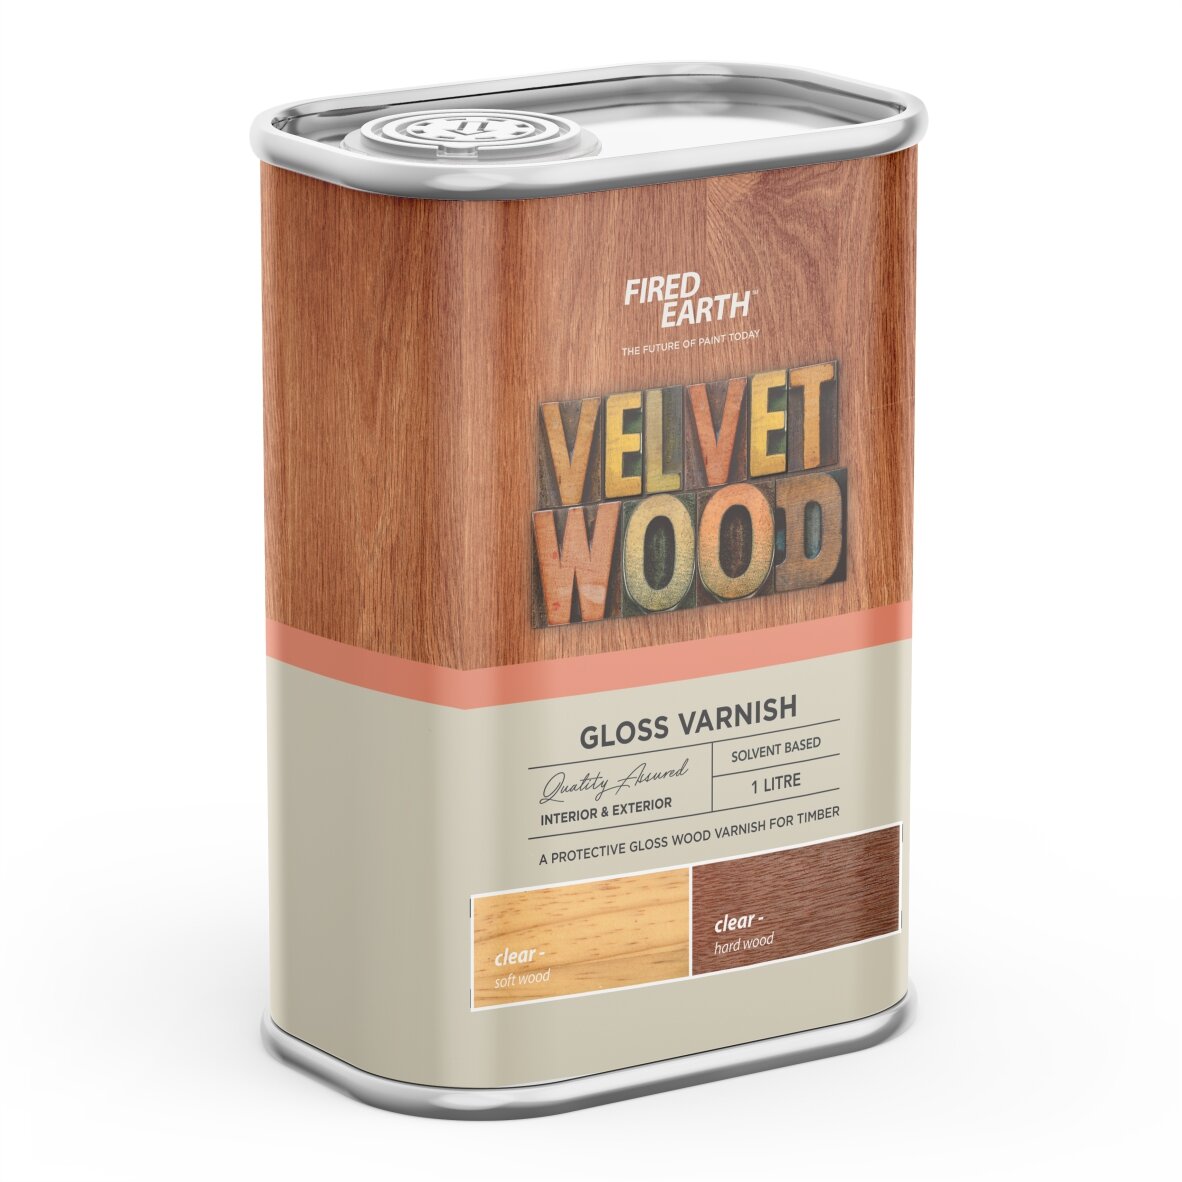 FE Wood Velvet gloss wood varnish.jpg